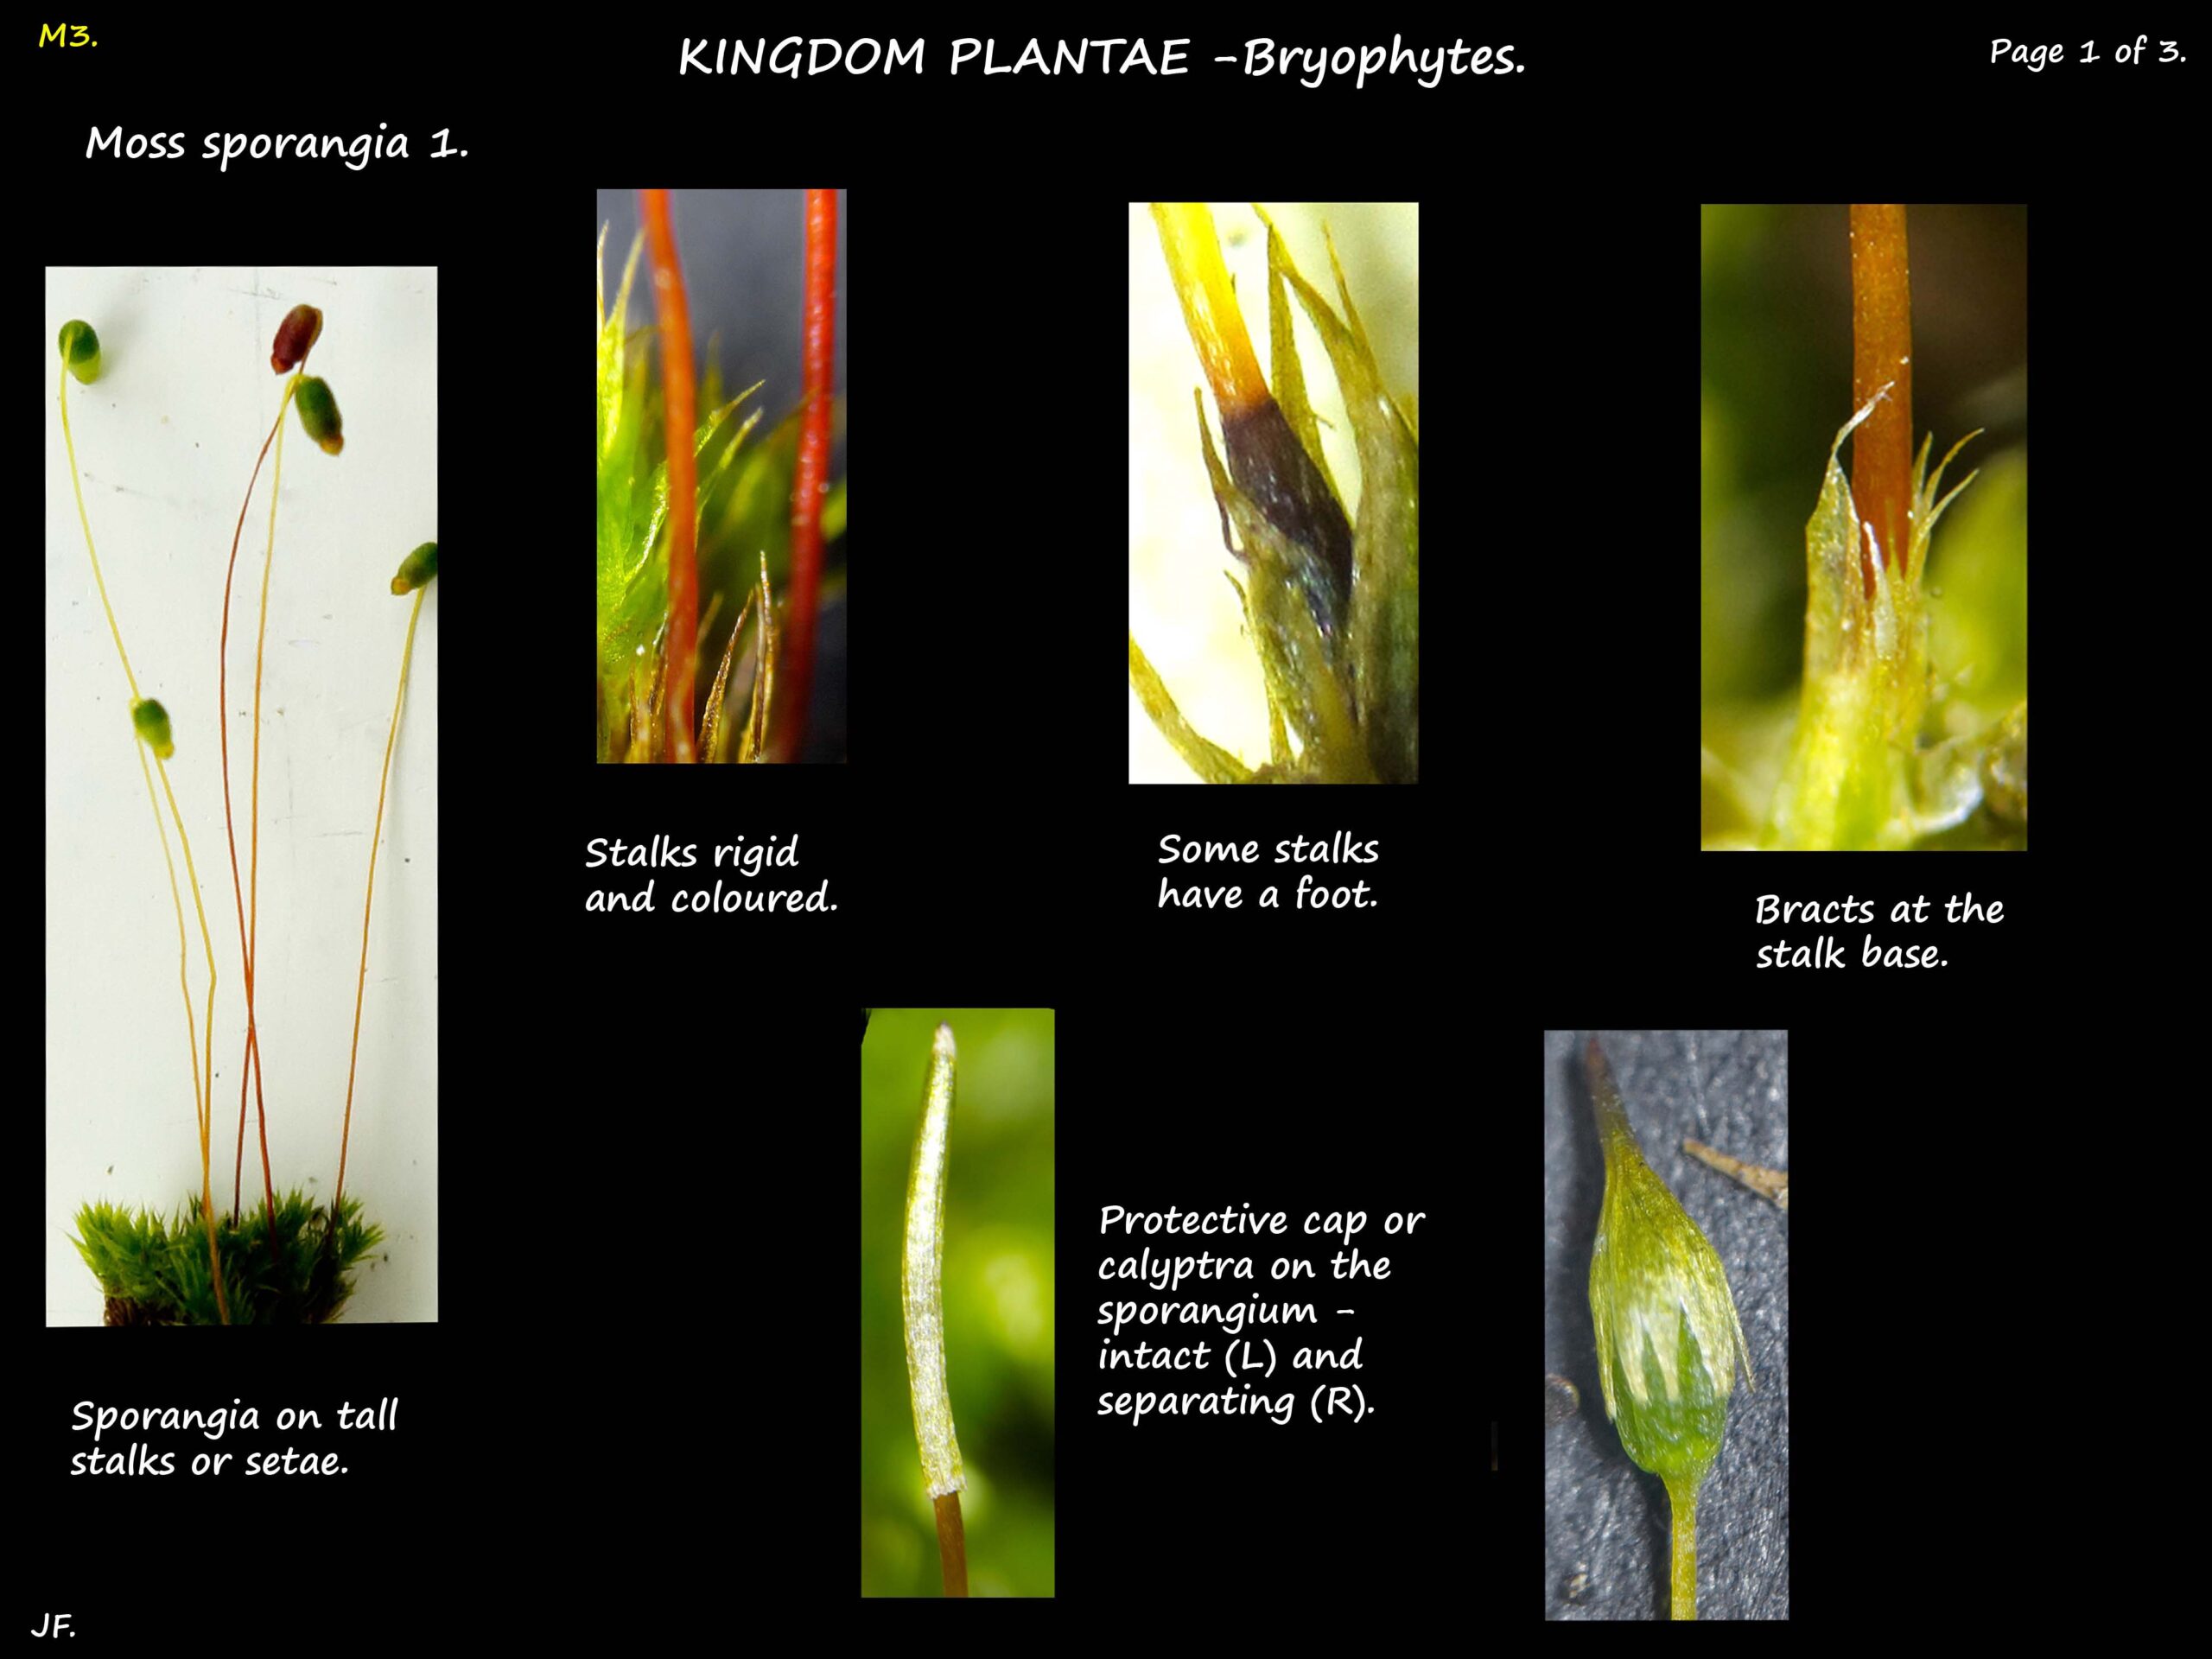 Moss sporangia & calyptra